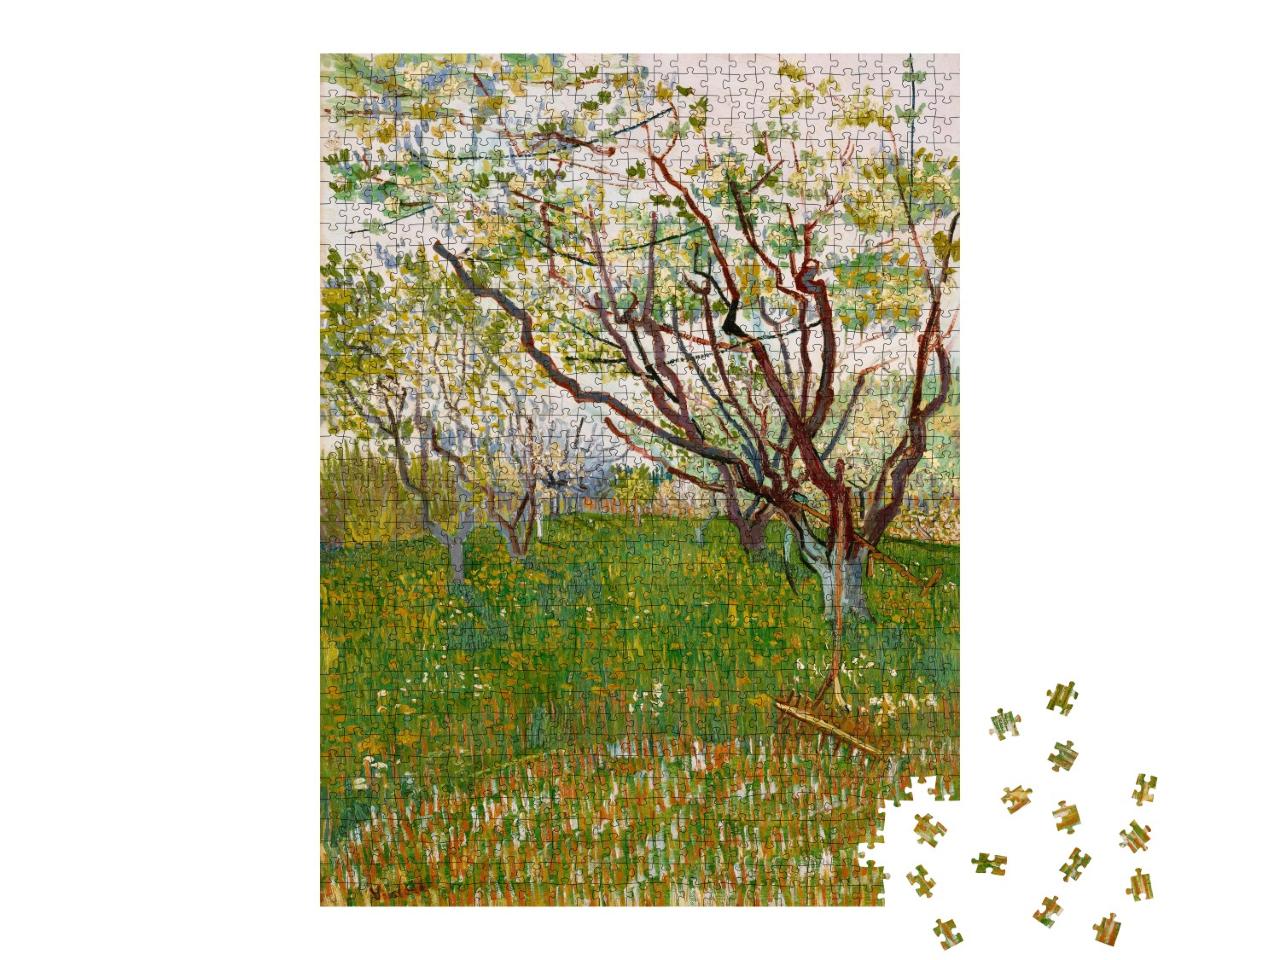 Puzzle de 1000 pièces « Vincent van Gogh - Le verger en fleurs »